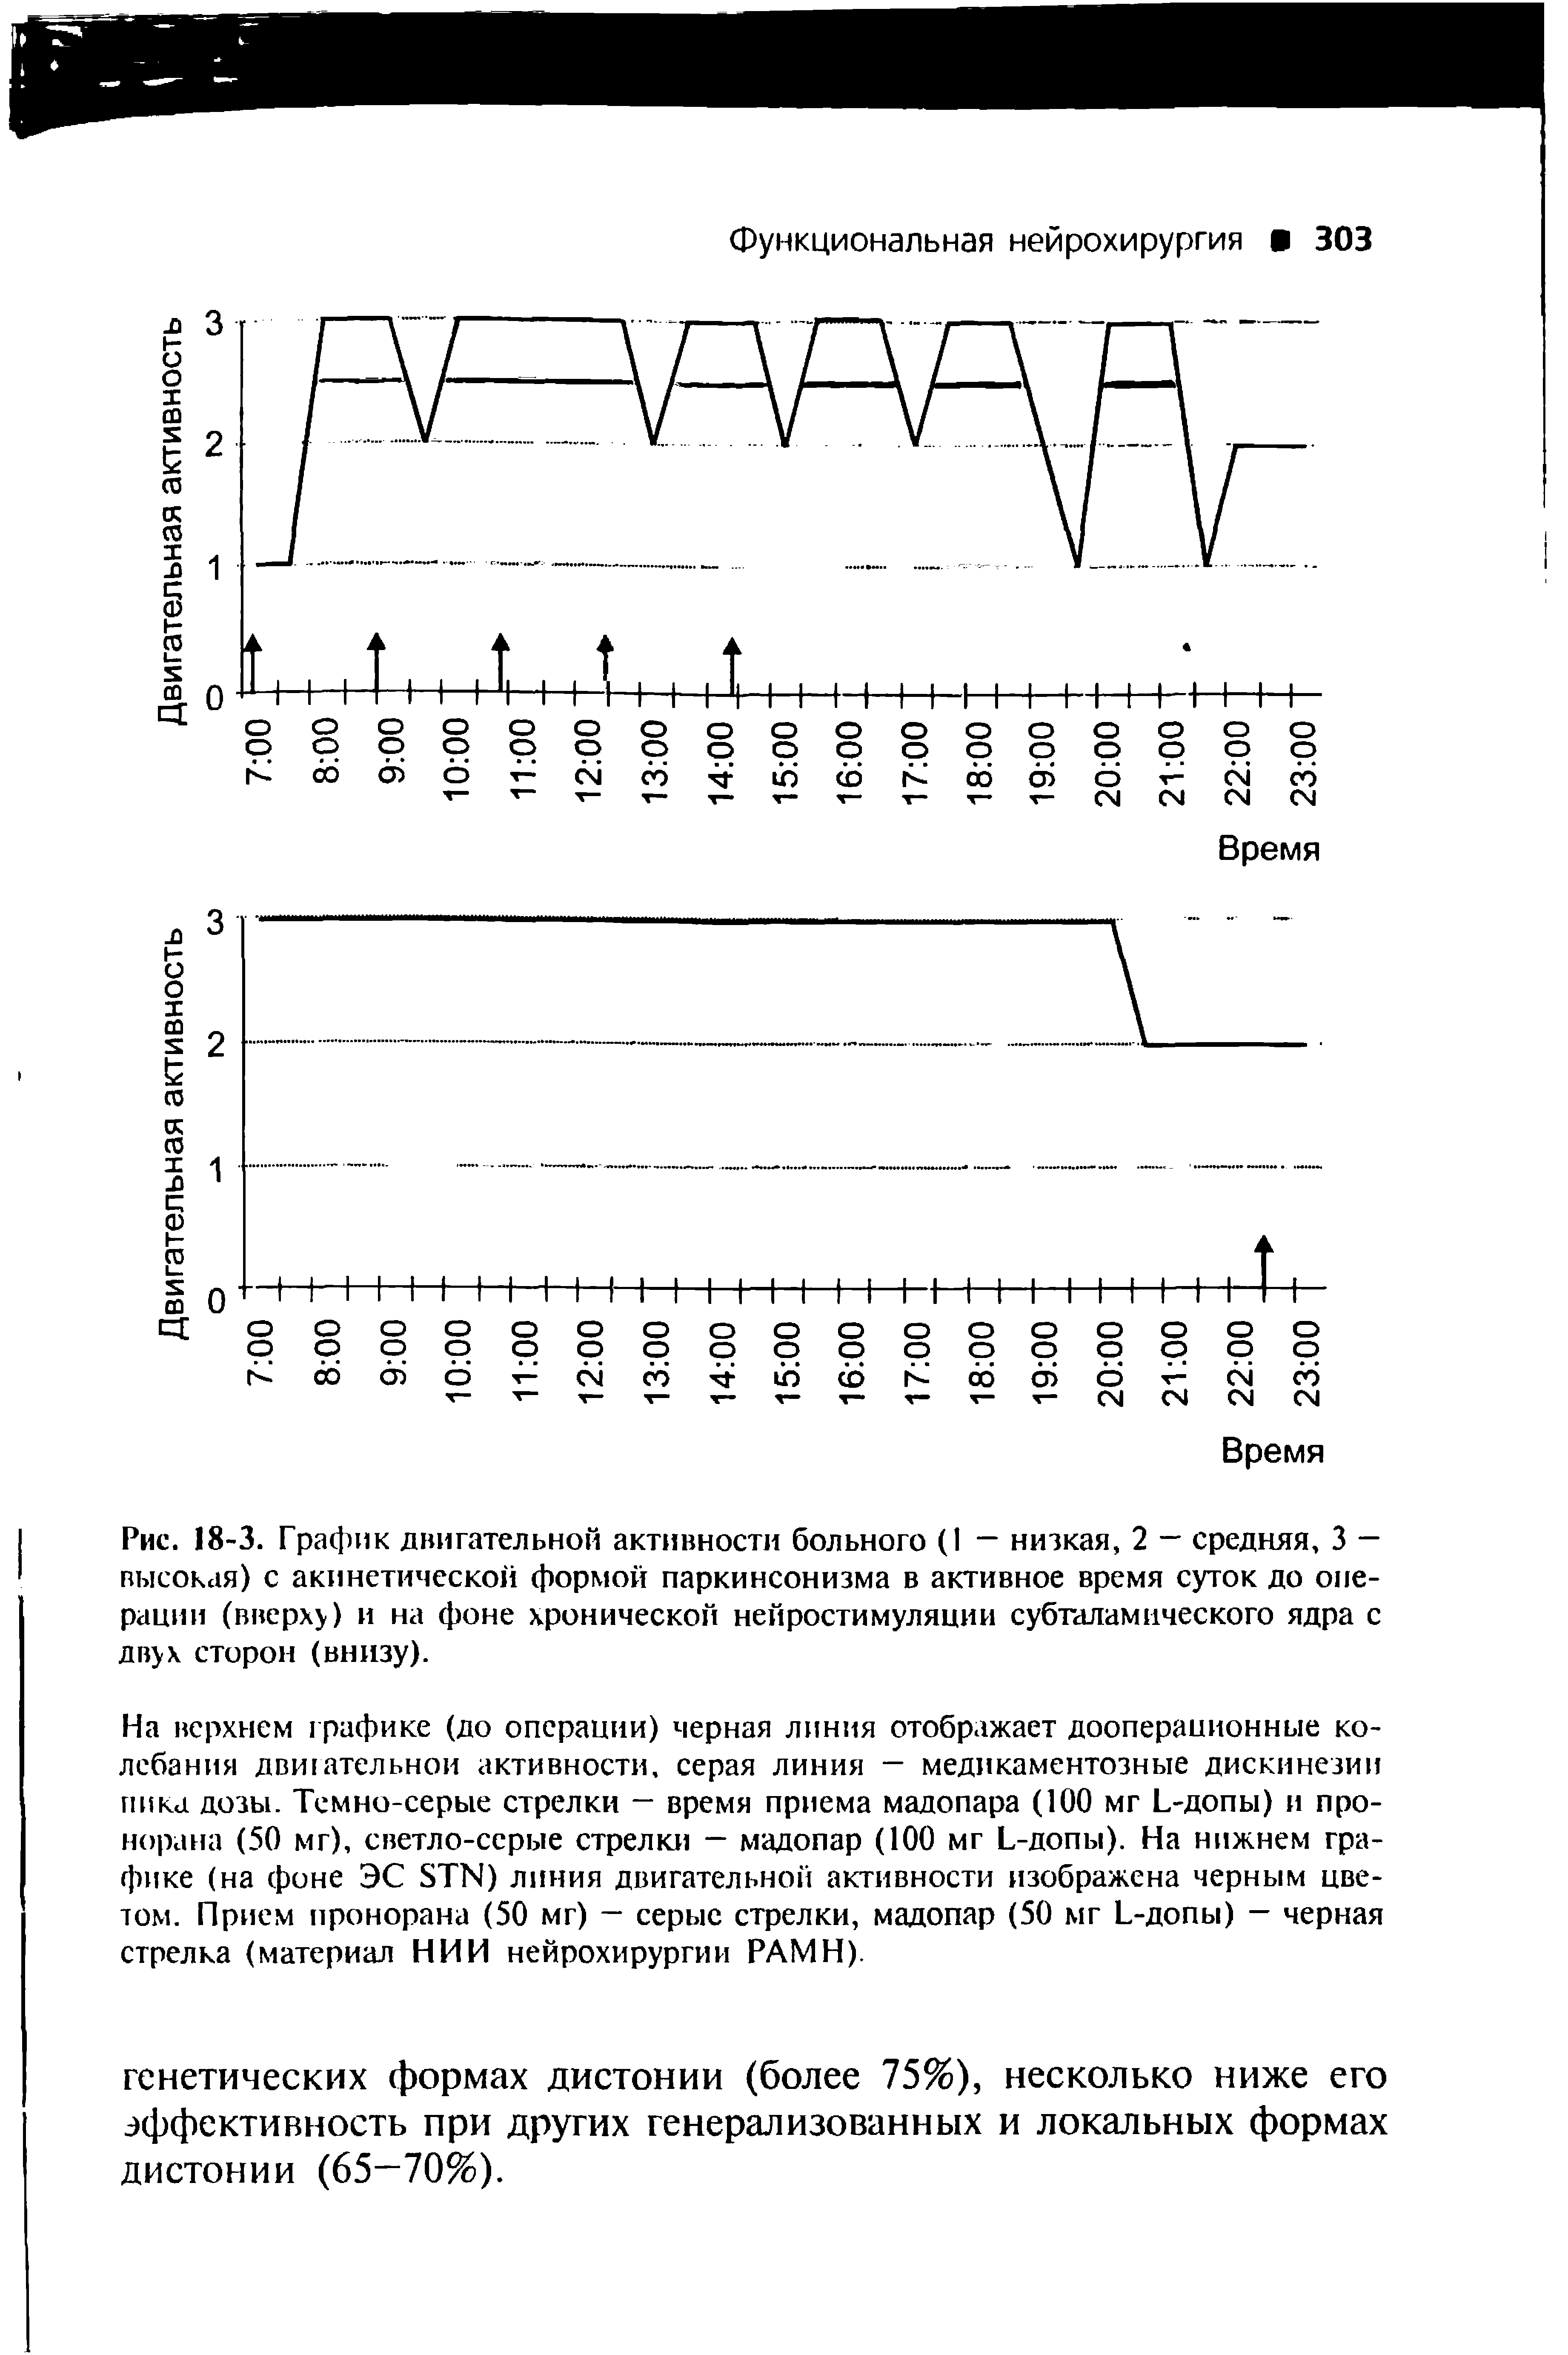 Рис. 18-3. График двигательной активности больного (I — низкая, 2 — средняя, 3 — высокая) с акинетической формой паркинсонизма в активное время суток до операции (вверху) и на фоне хронической нейростимуляции субталамического ядра с двух сторон (внизу).